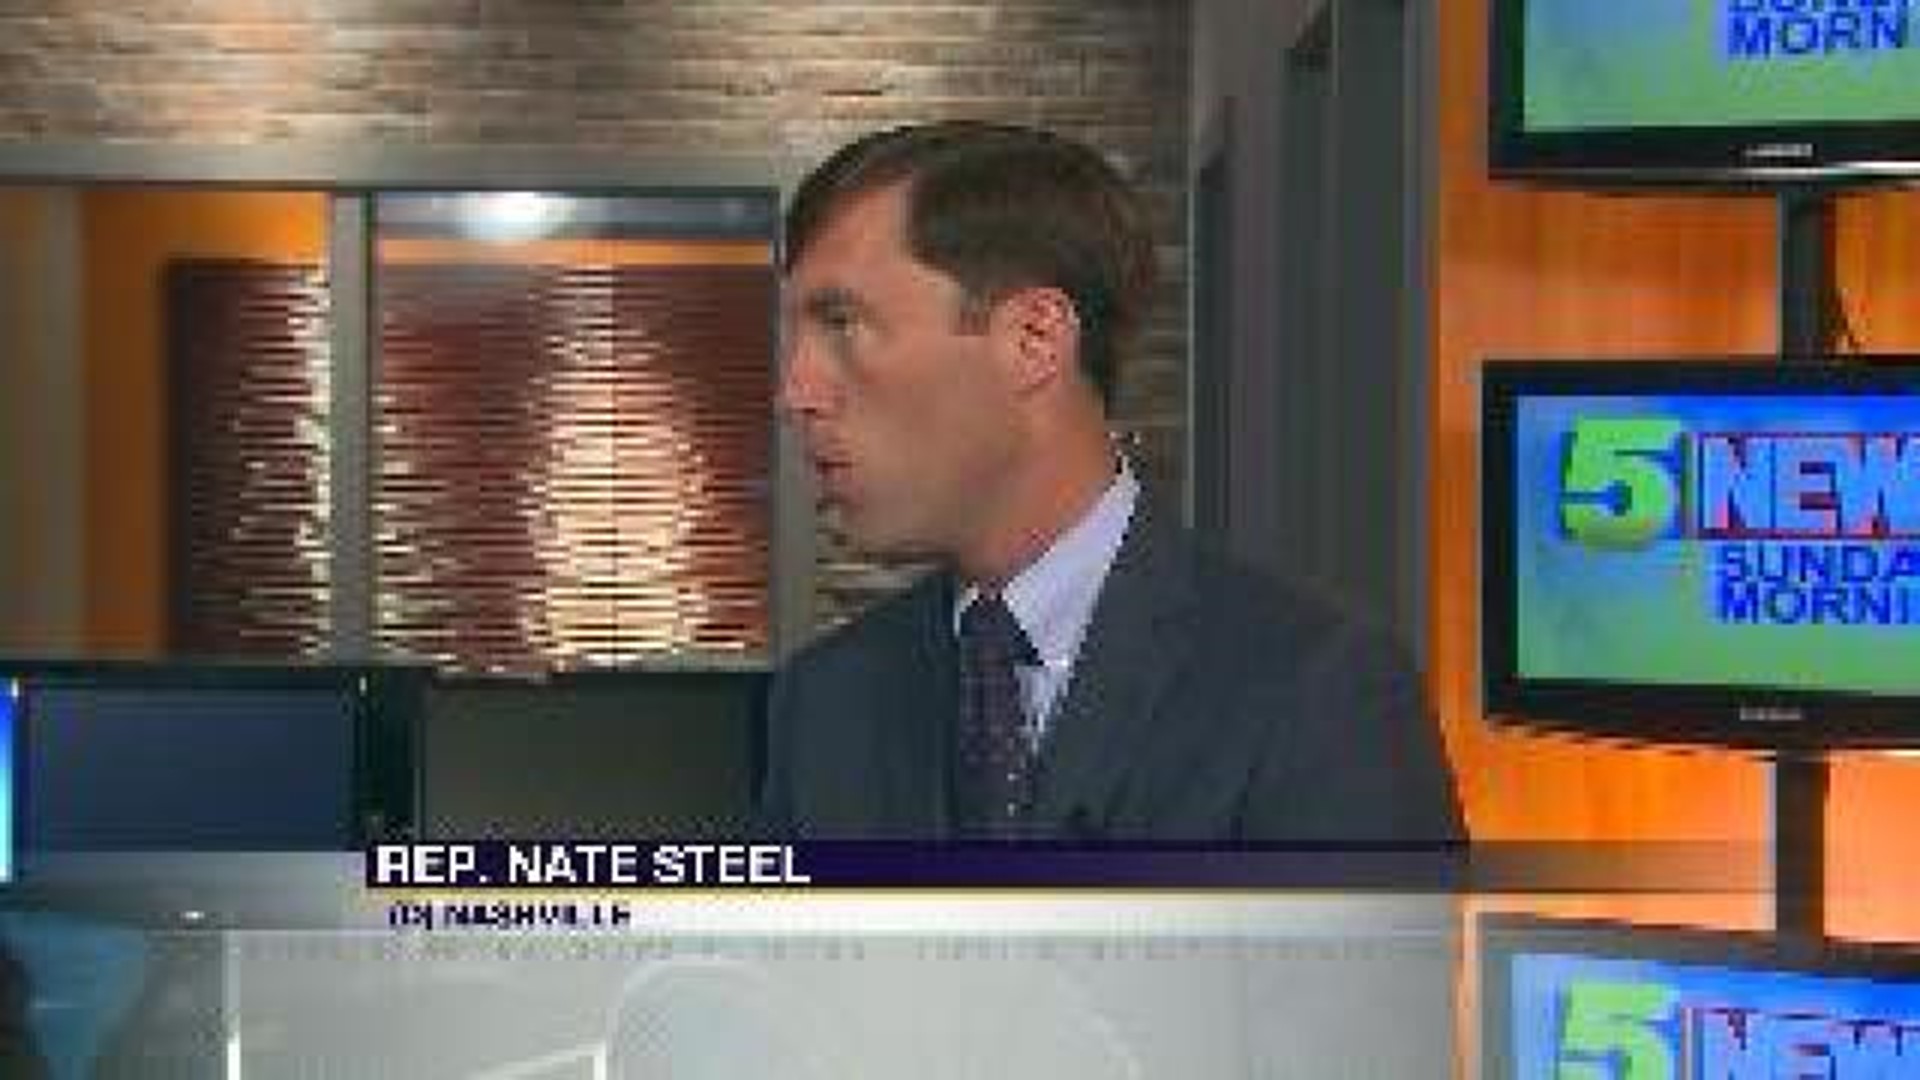 Rep Nate Steel